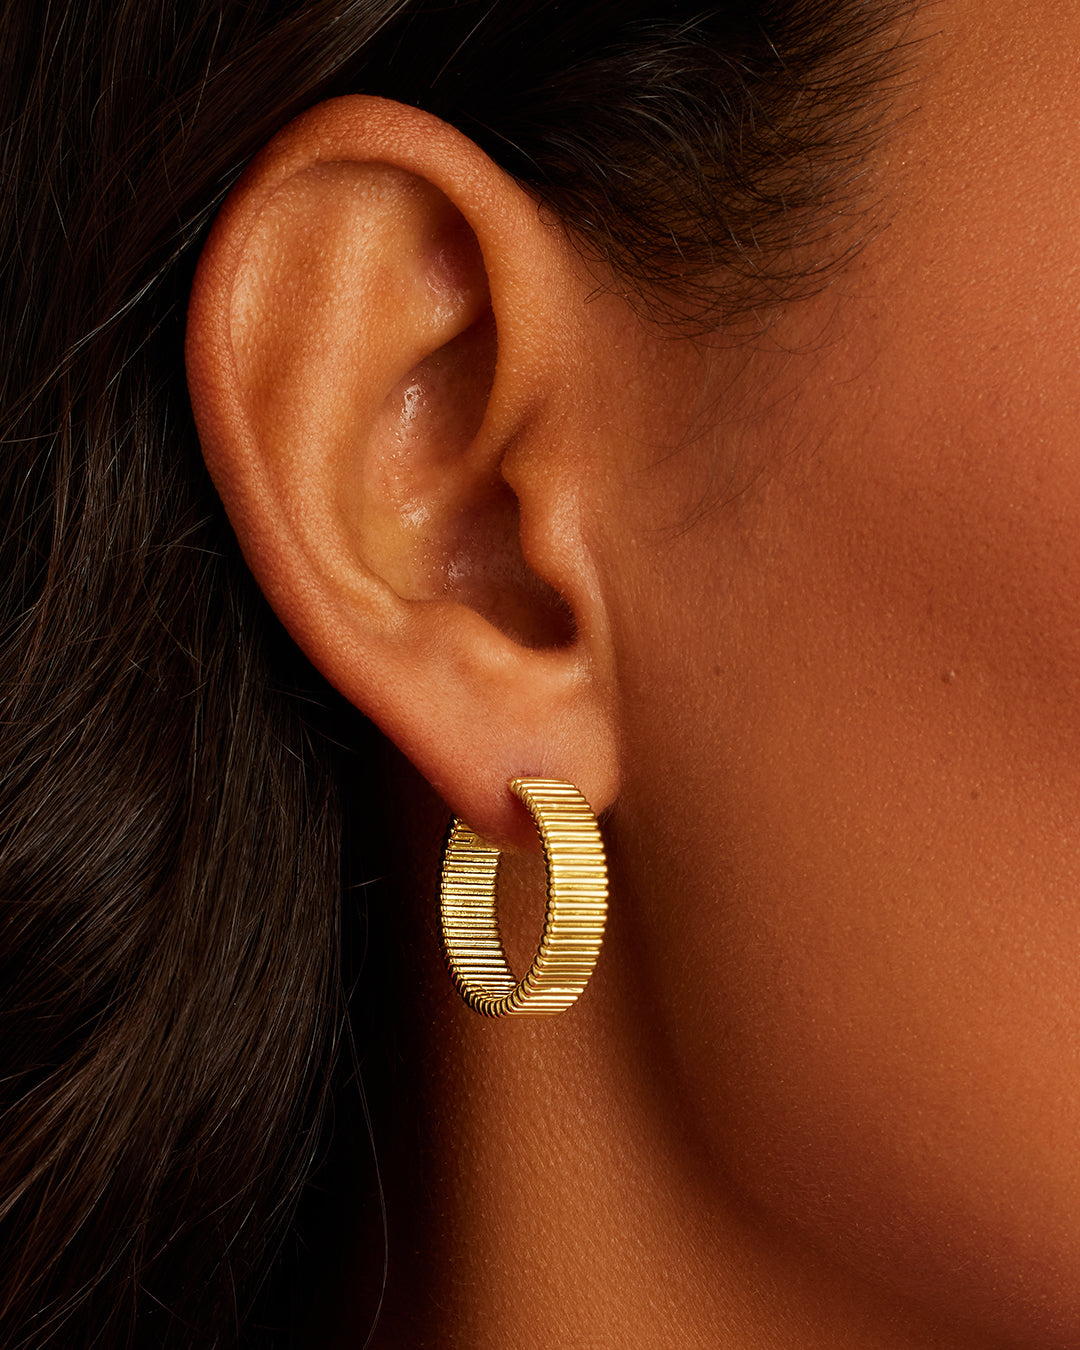 Heart Charm Stud Earring in Heart/Gold Plated, Women's by Gorjana